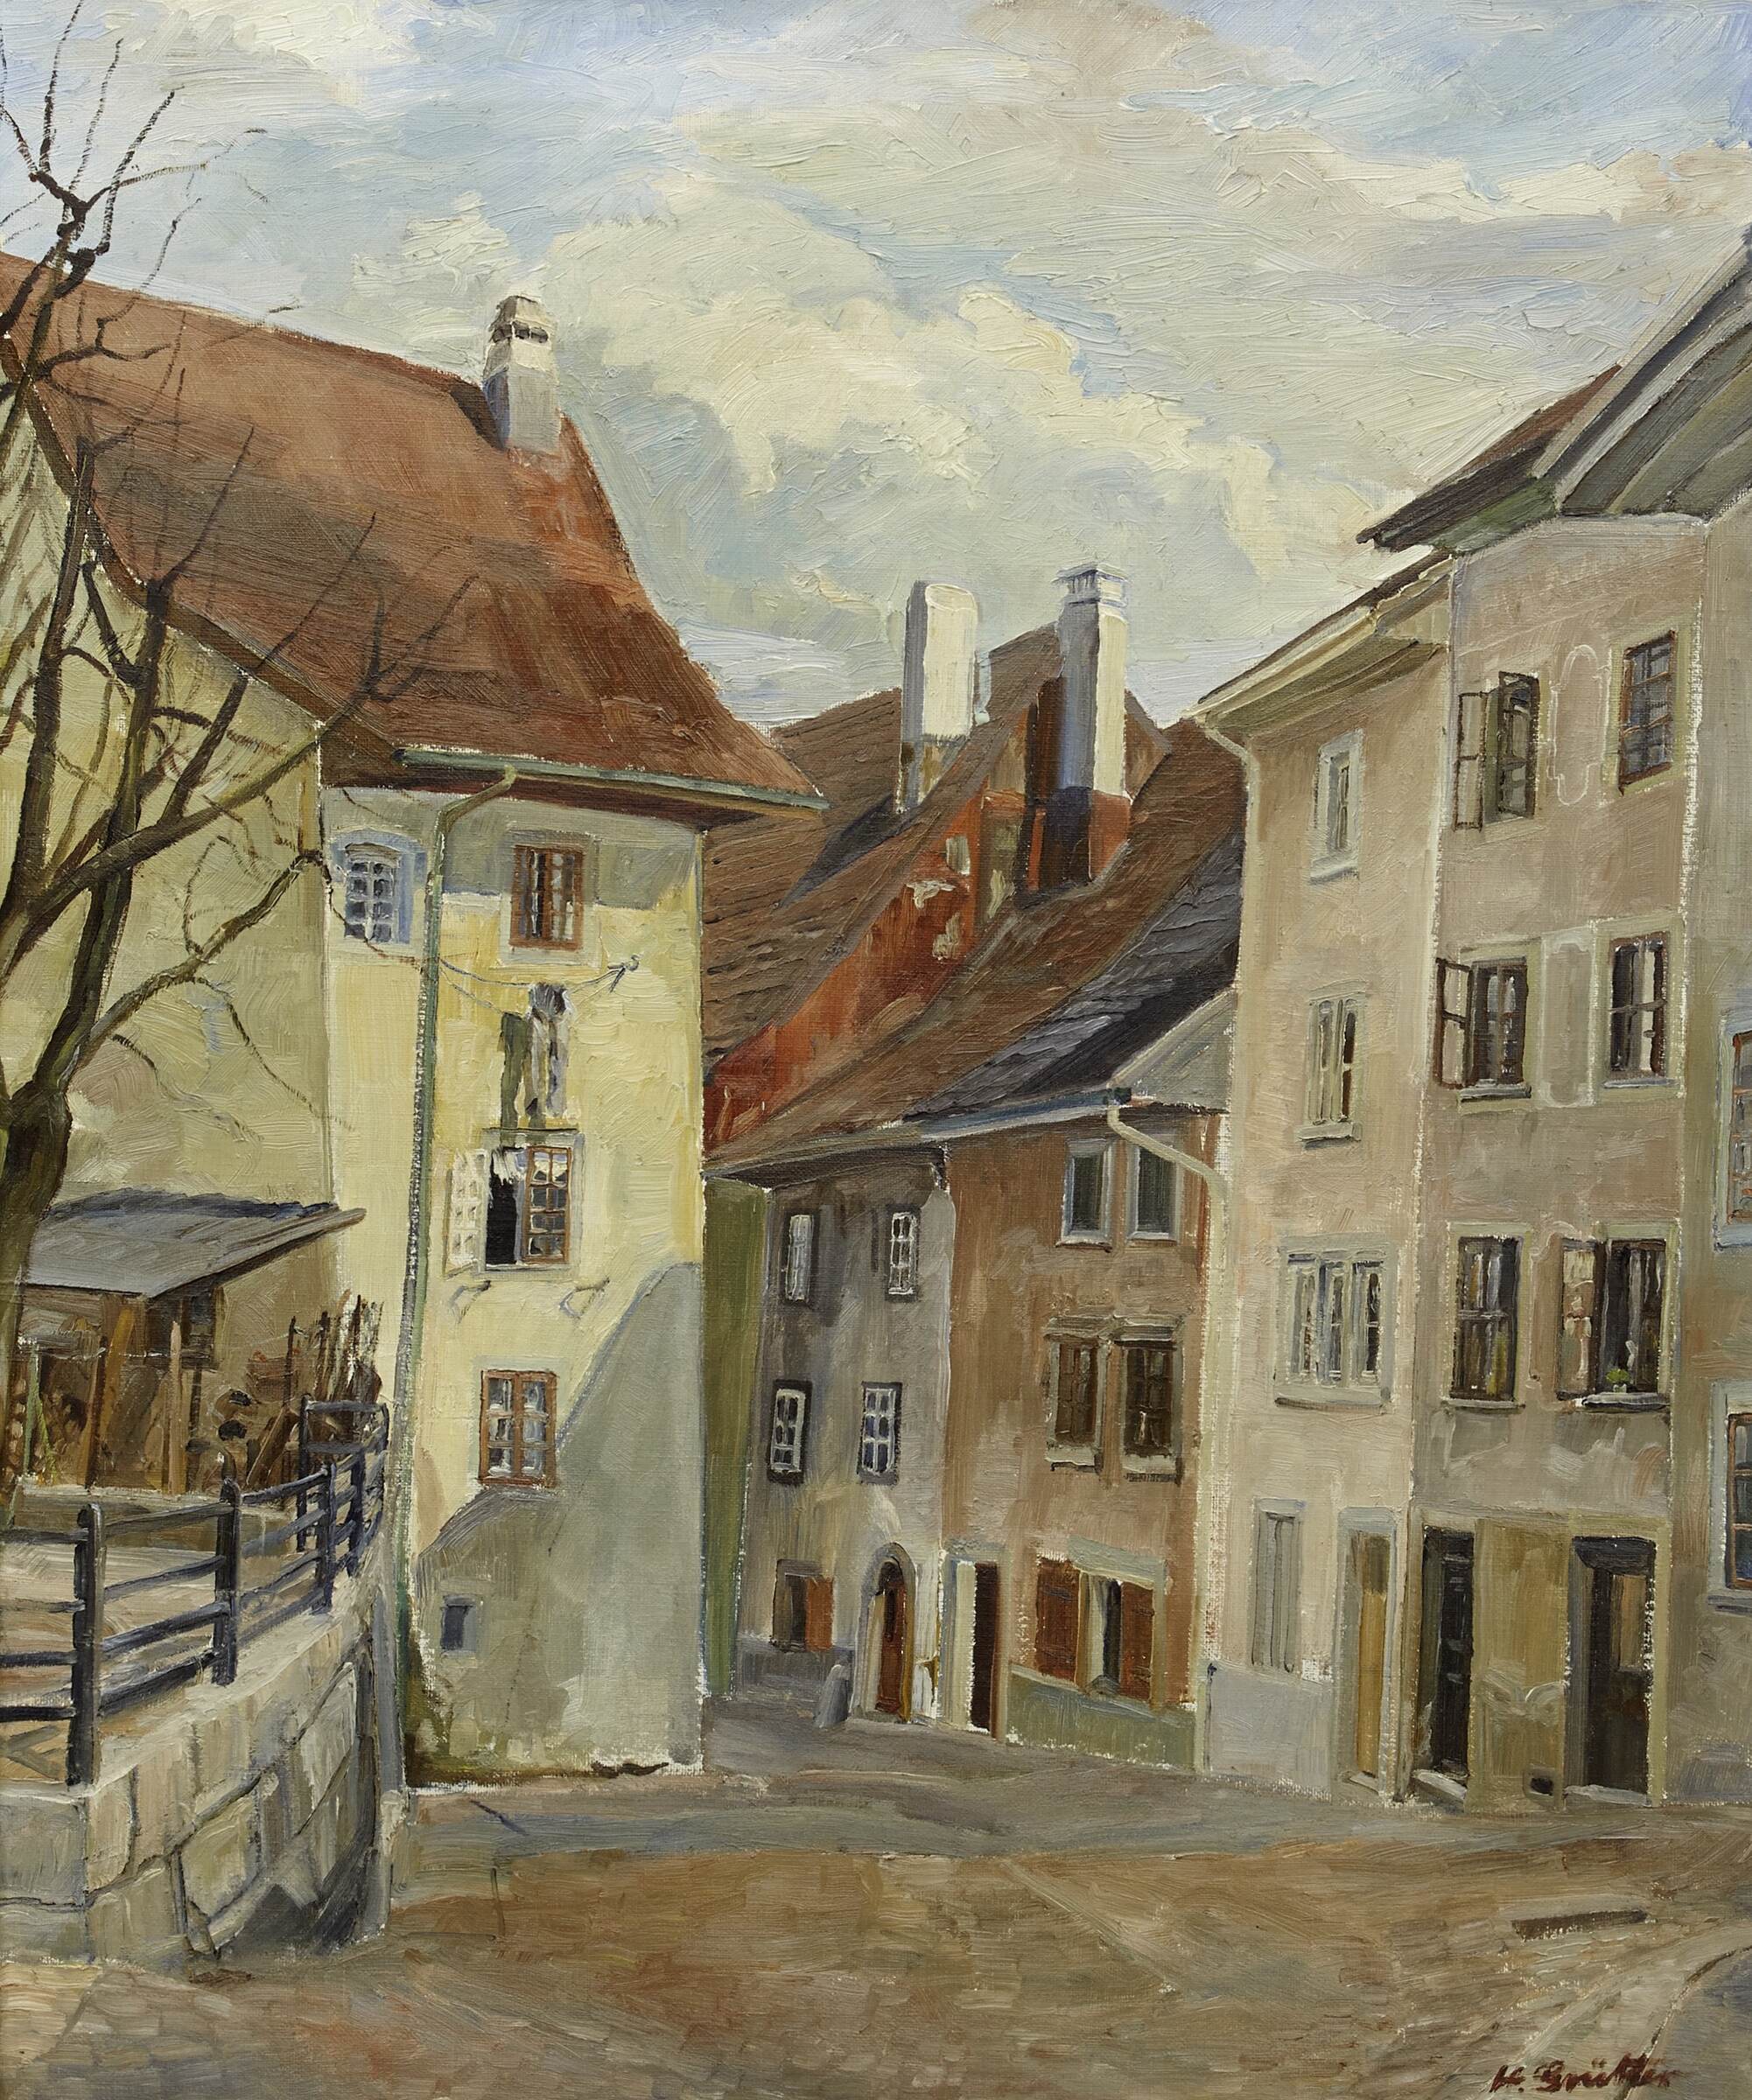 Hans Grütter (Olten 1900 – 2000 Olten): Altstadt (Marktgasse), o. J. Öl auf Leinwand, 60 x 50 cm, Kunstmuseum Olten, Inv. X.417, Altbestand